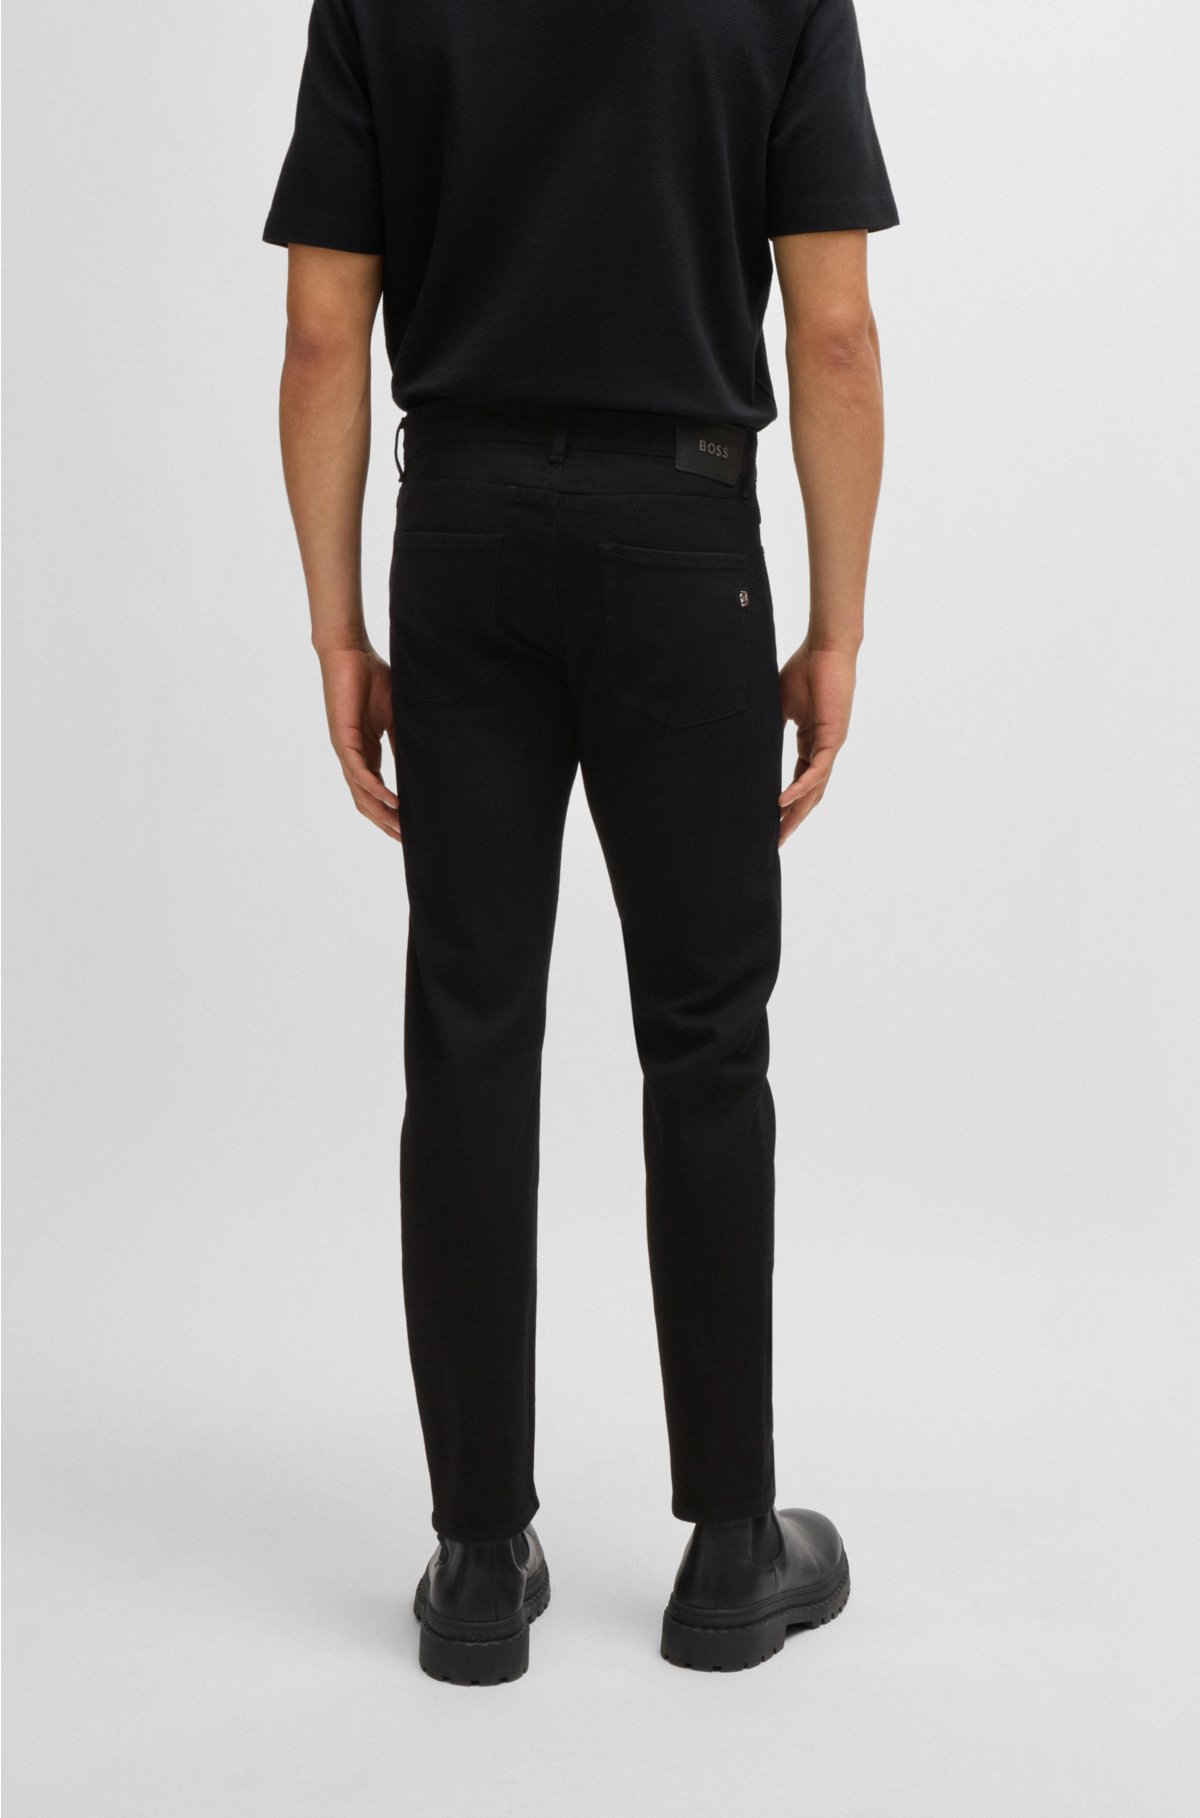 Slim-fit jeans in black-black Italian denim, Black